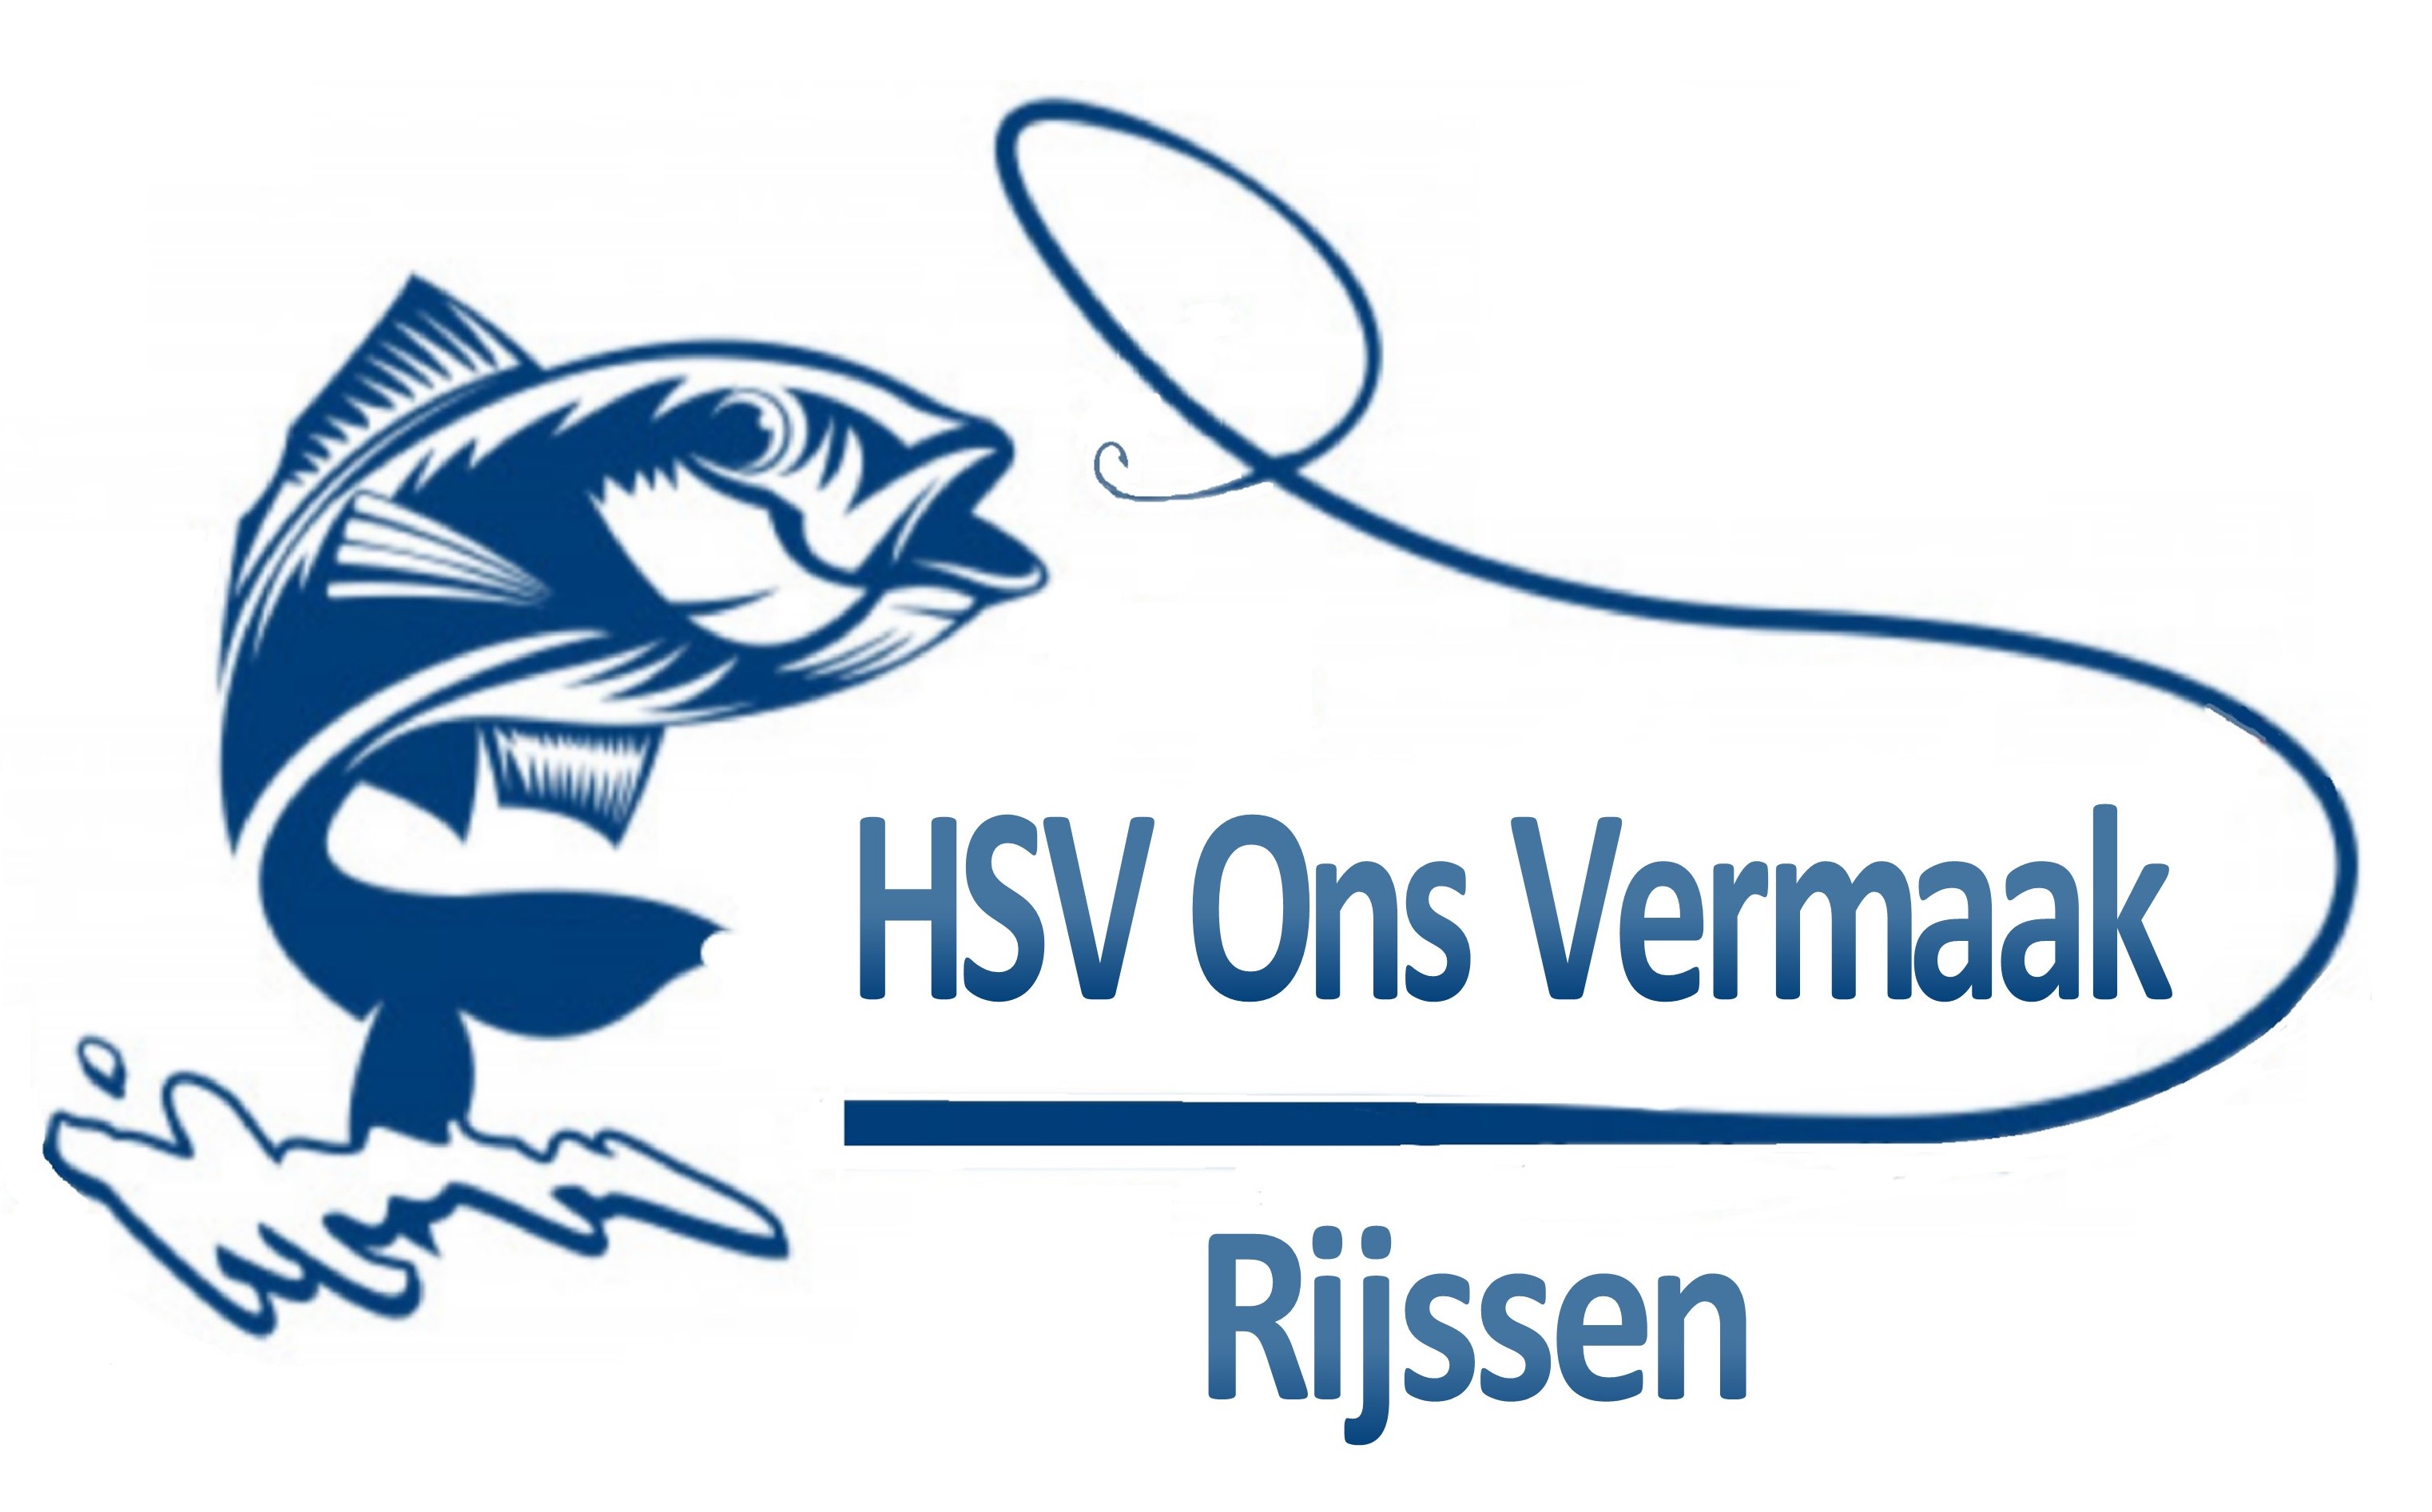 HSV Ons Vermaak - Rijssen